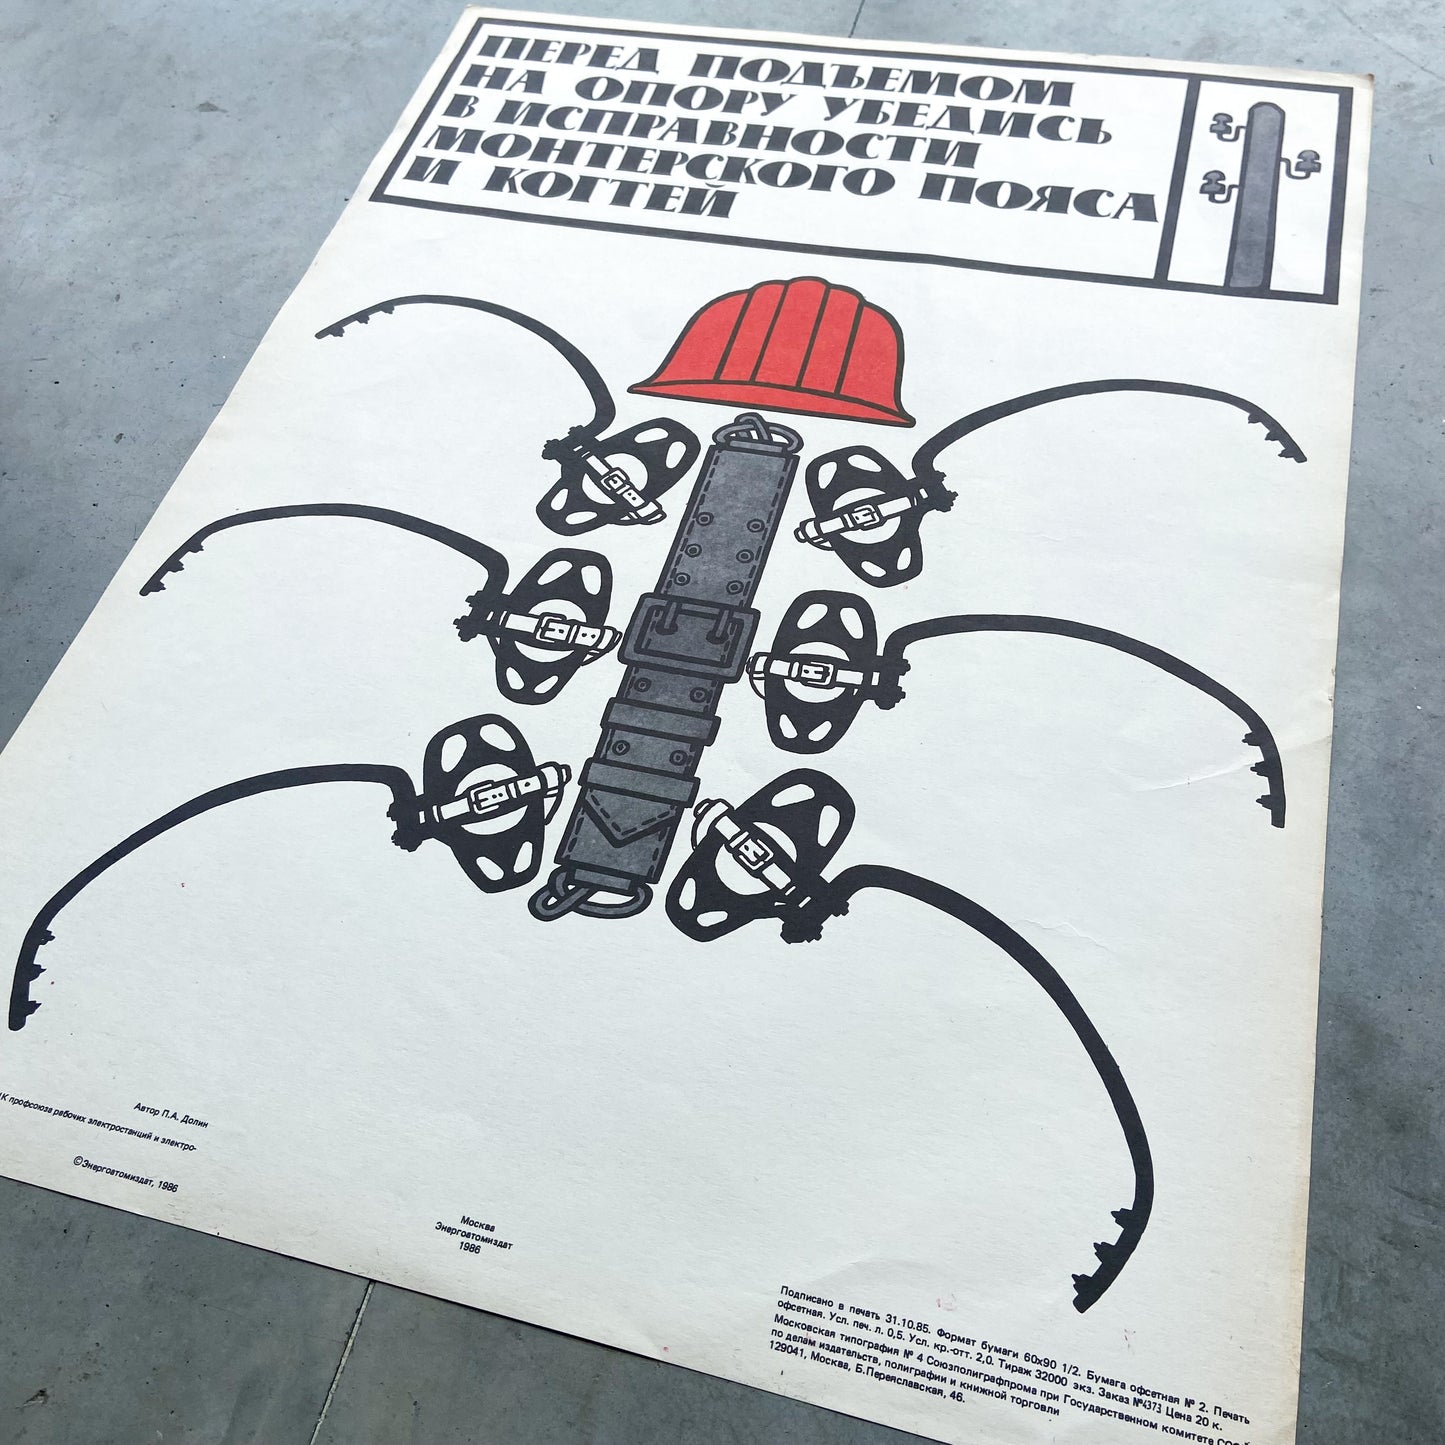 1986 Soviet Work Safety Poster #P1166 - 17" x 23"